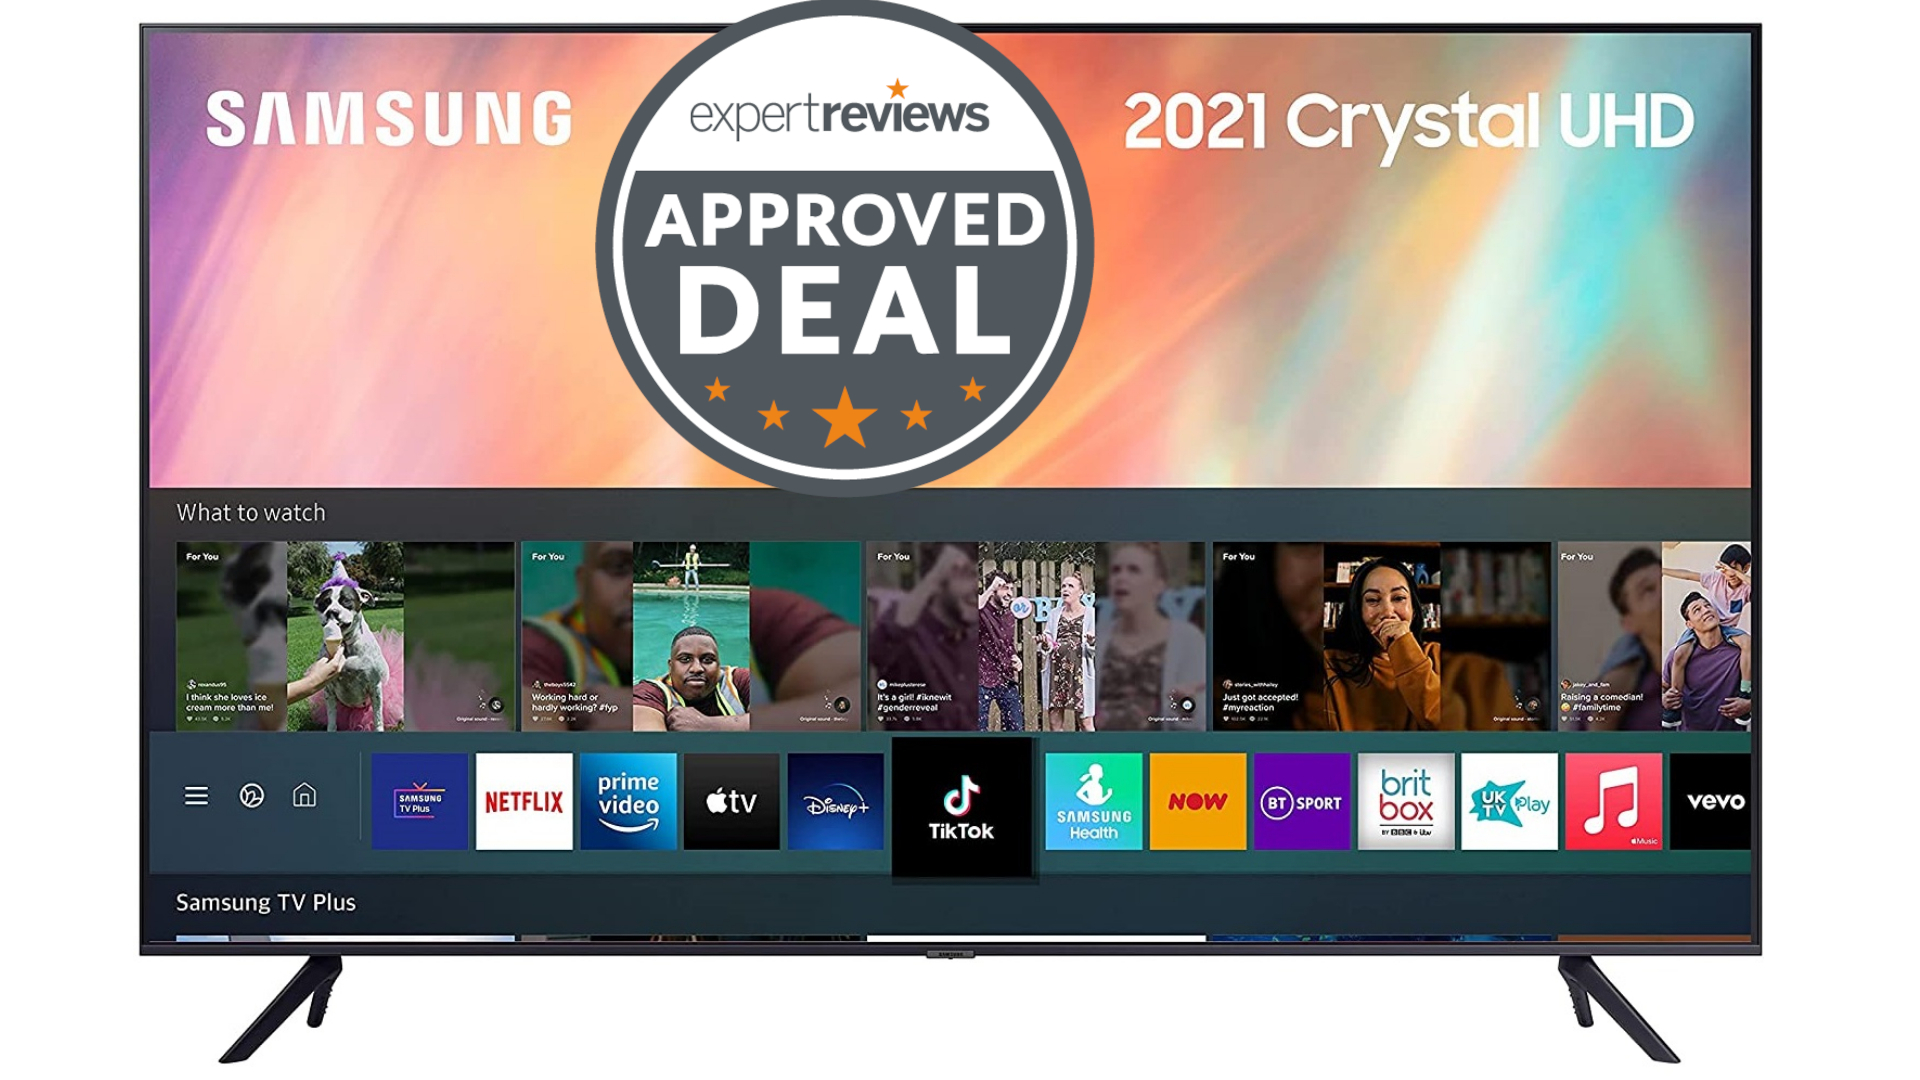 El televisor Samsung 2021 AU7110 ahora es más barato que nunca en Amazon